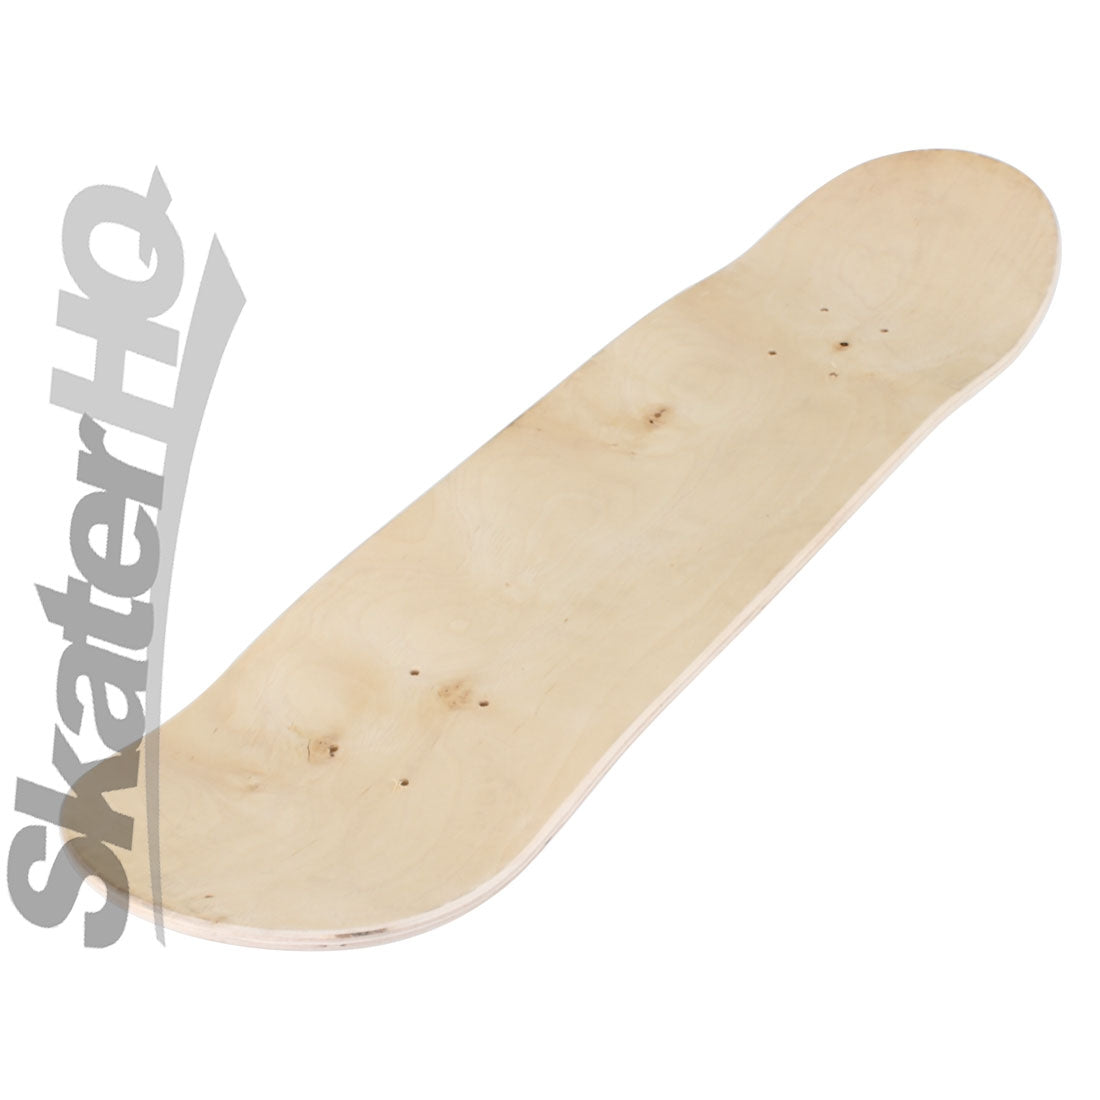 Art Blank 8.25 Deck - Unstained Skateboard Decks ALL BLANKS